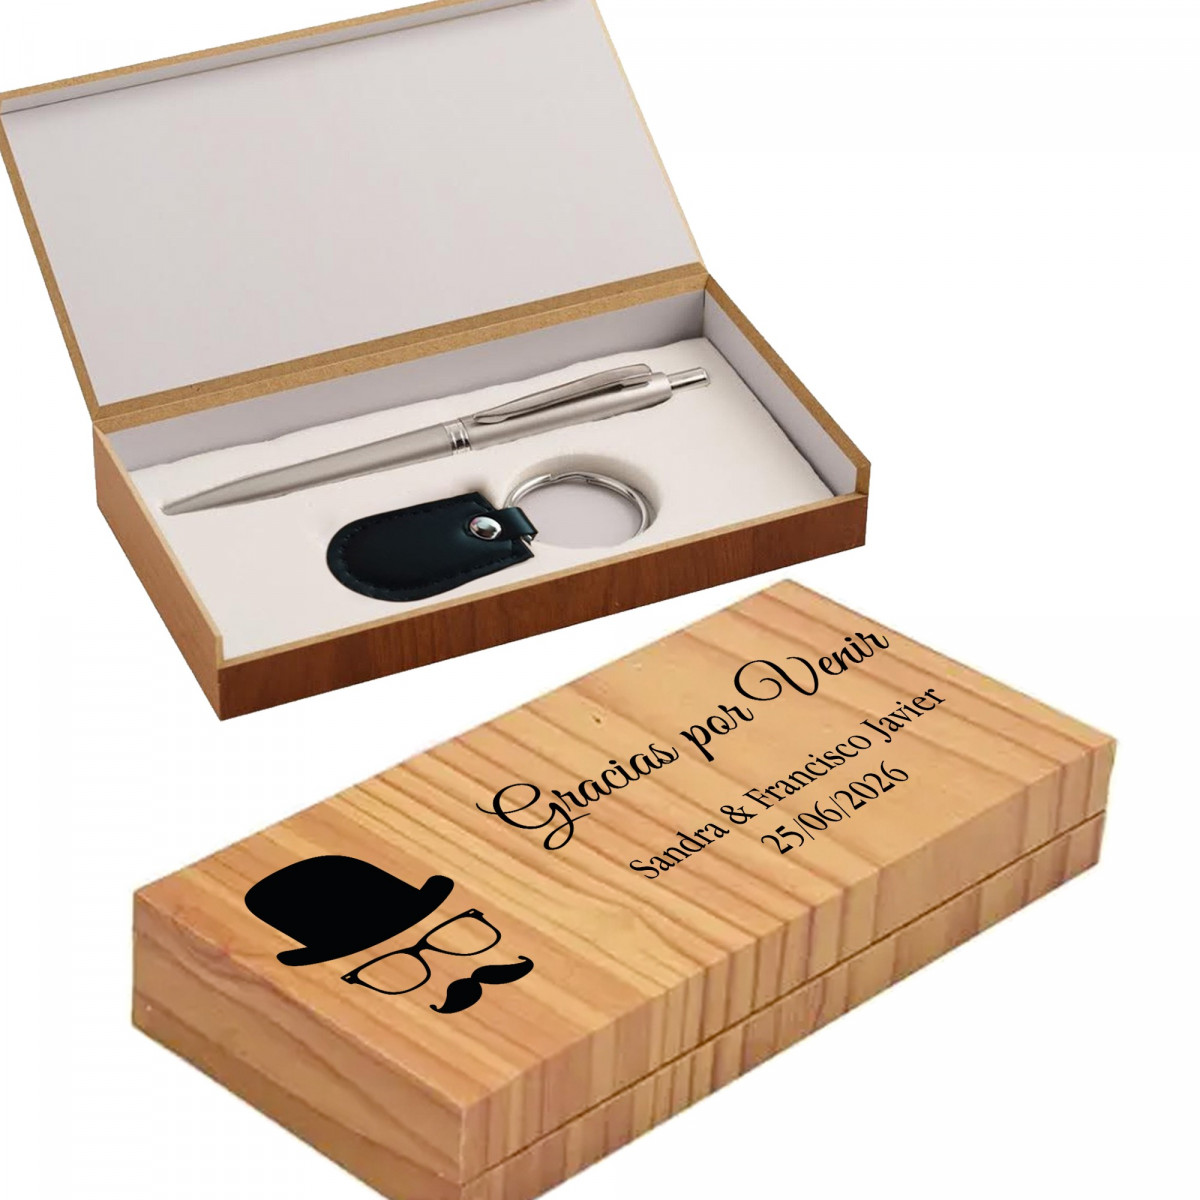 Boligrafo y llavero en caja de madera personalizada